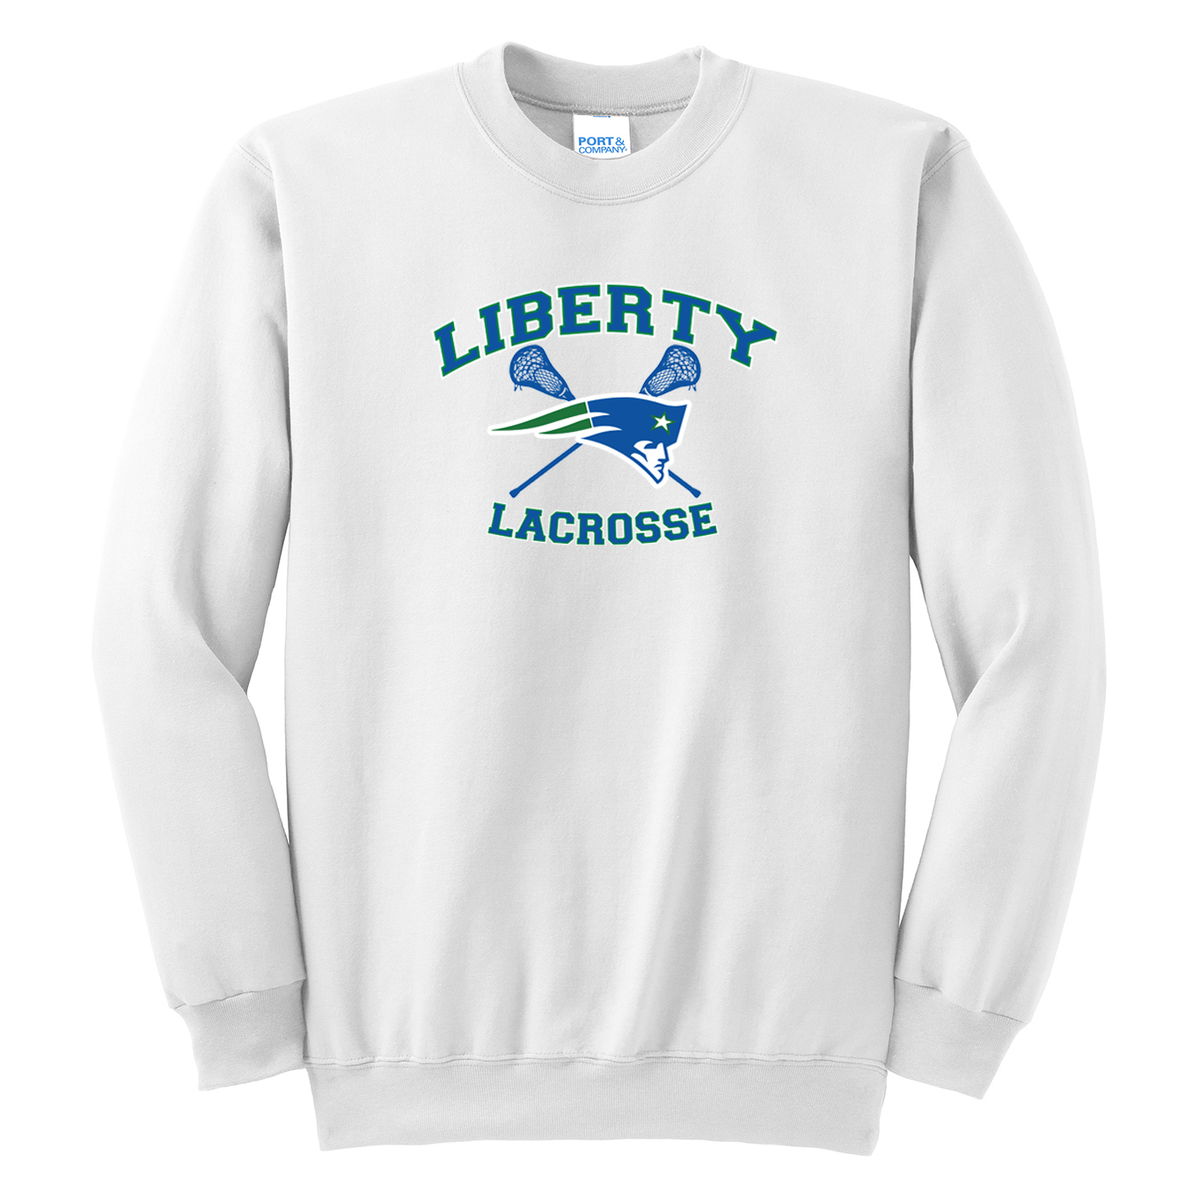 Liberty Lacrosse Crew Neck Sweater